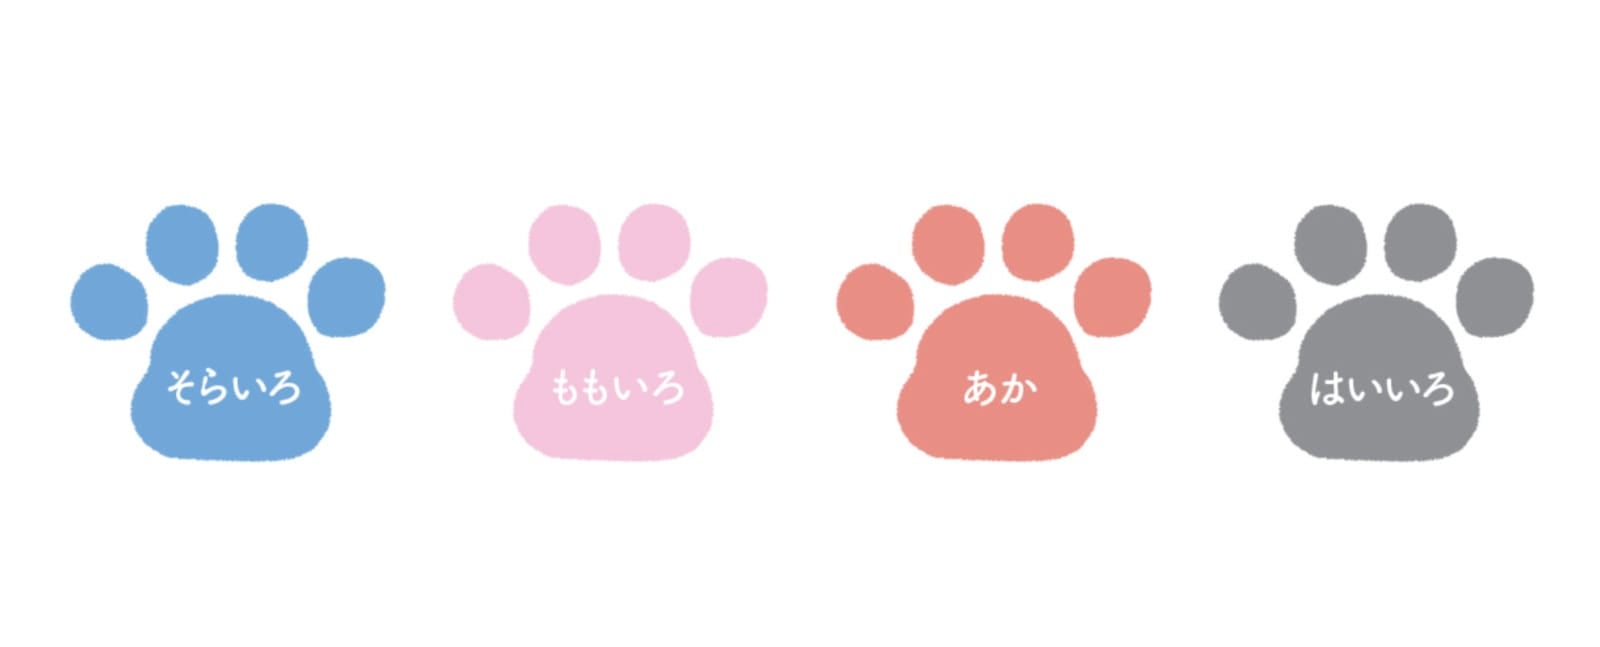 หมึกปั๊มอุ้งเท้าหมาแมว สินค้าญี่ปุ่น